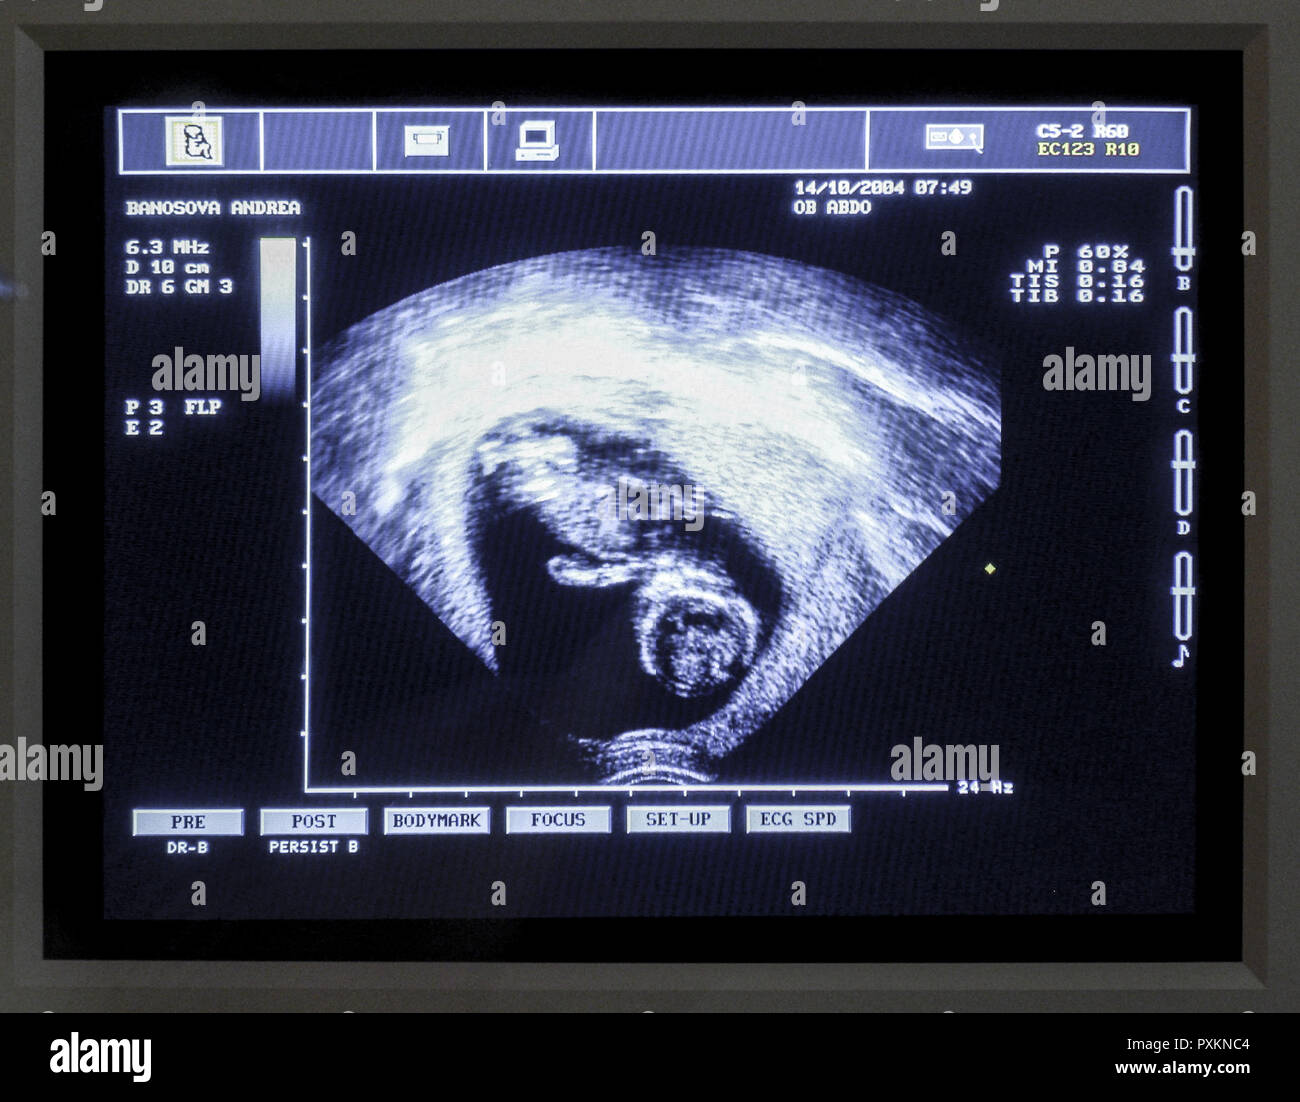 Ultraschallbild Foetus Monitor Untersuchung Schwangerschaft Kontrolluntersuchung Ultraschallaufnahme Kind Fetus Medizin Ultraschall Vorsorgeuntersuchu Stock Photo